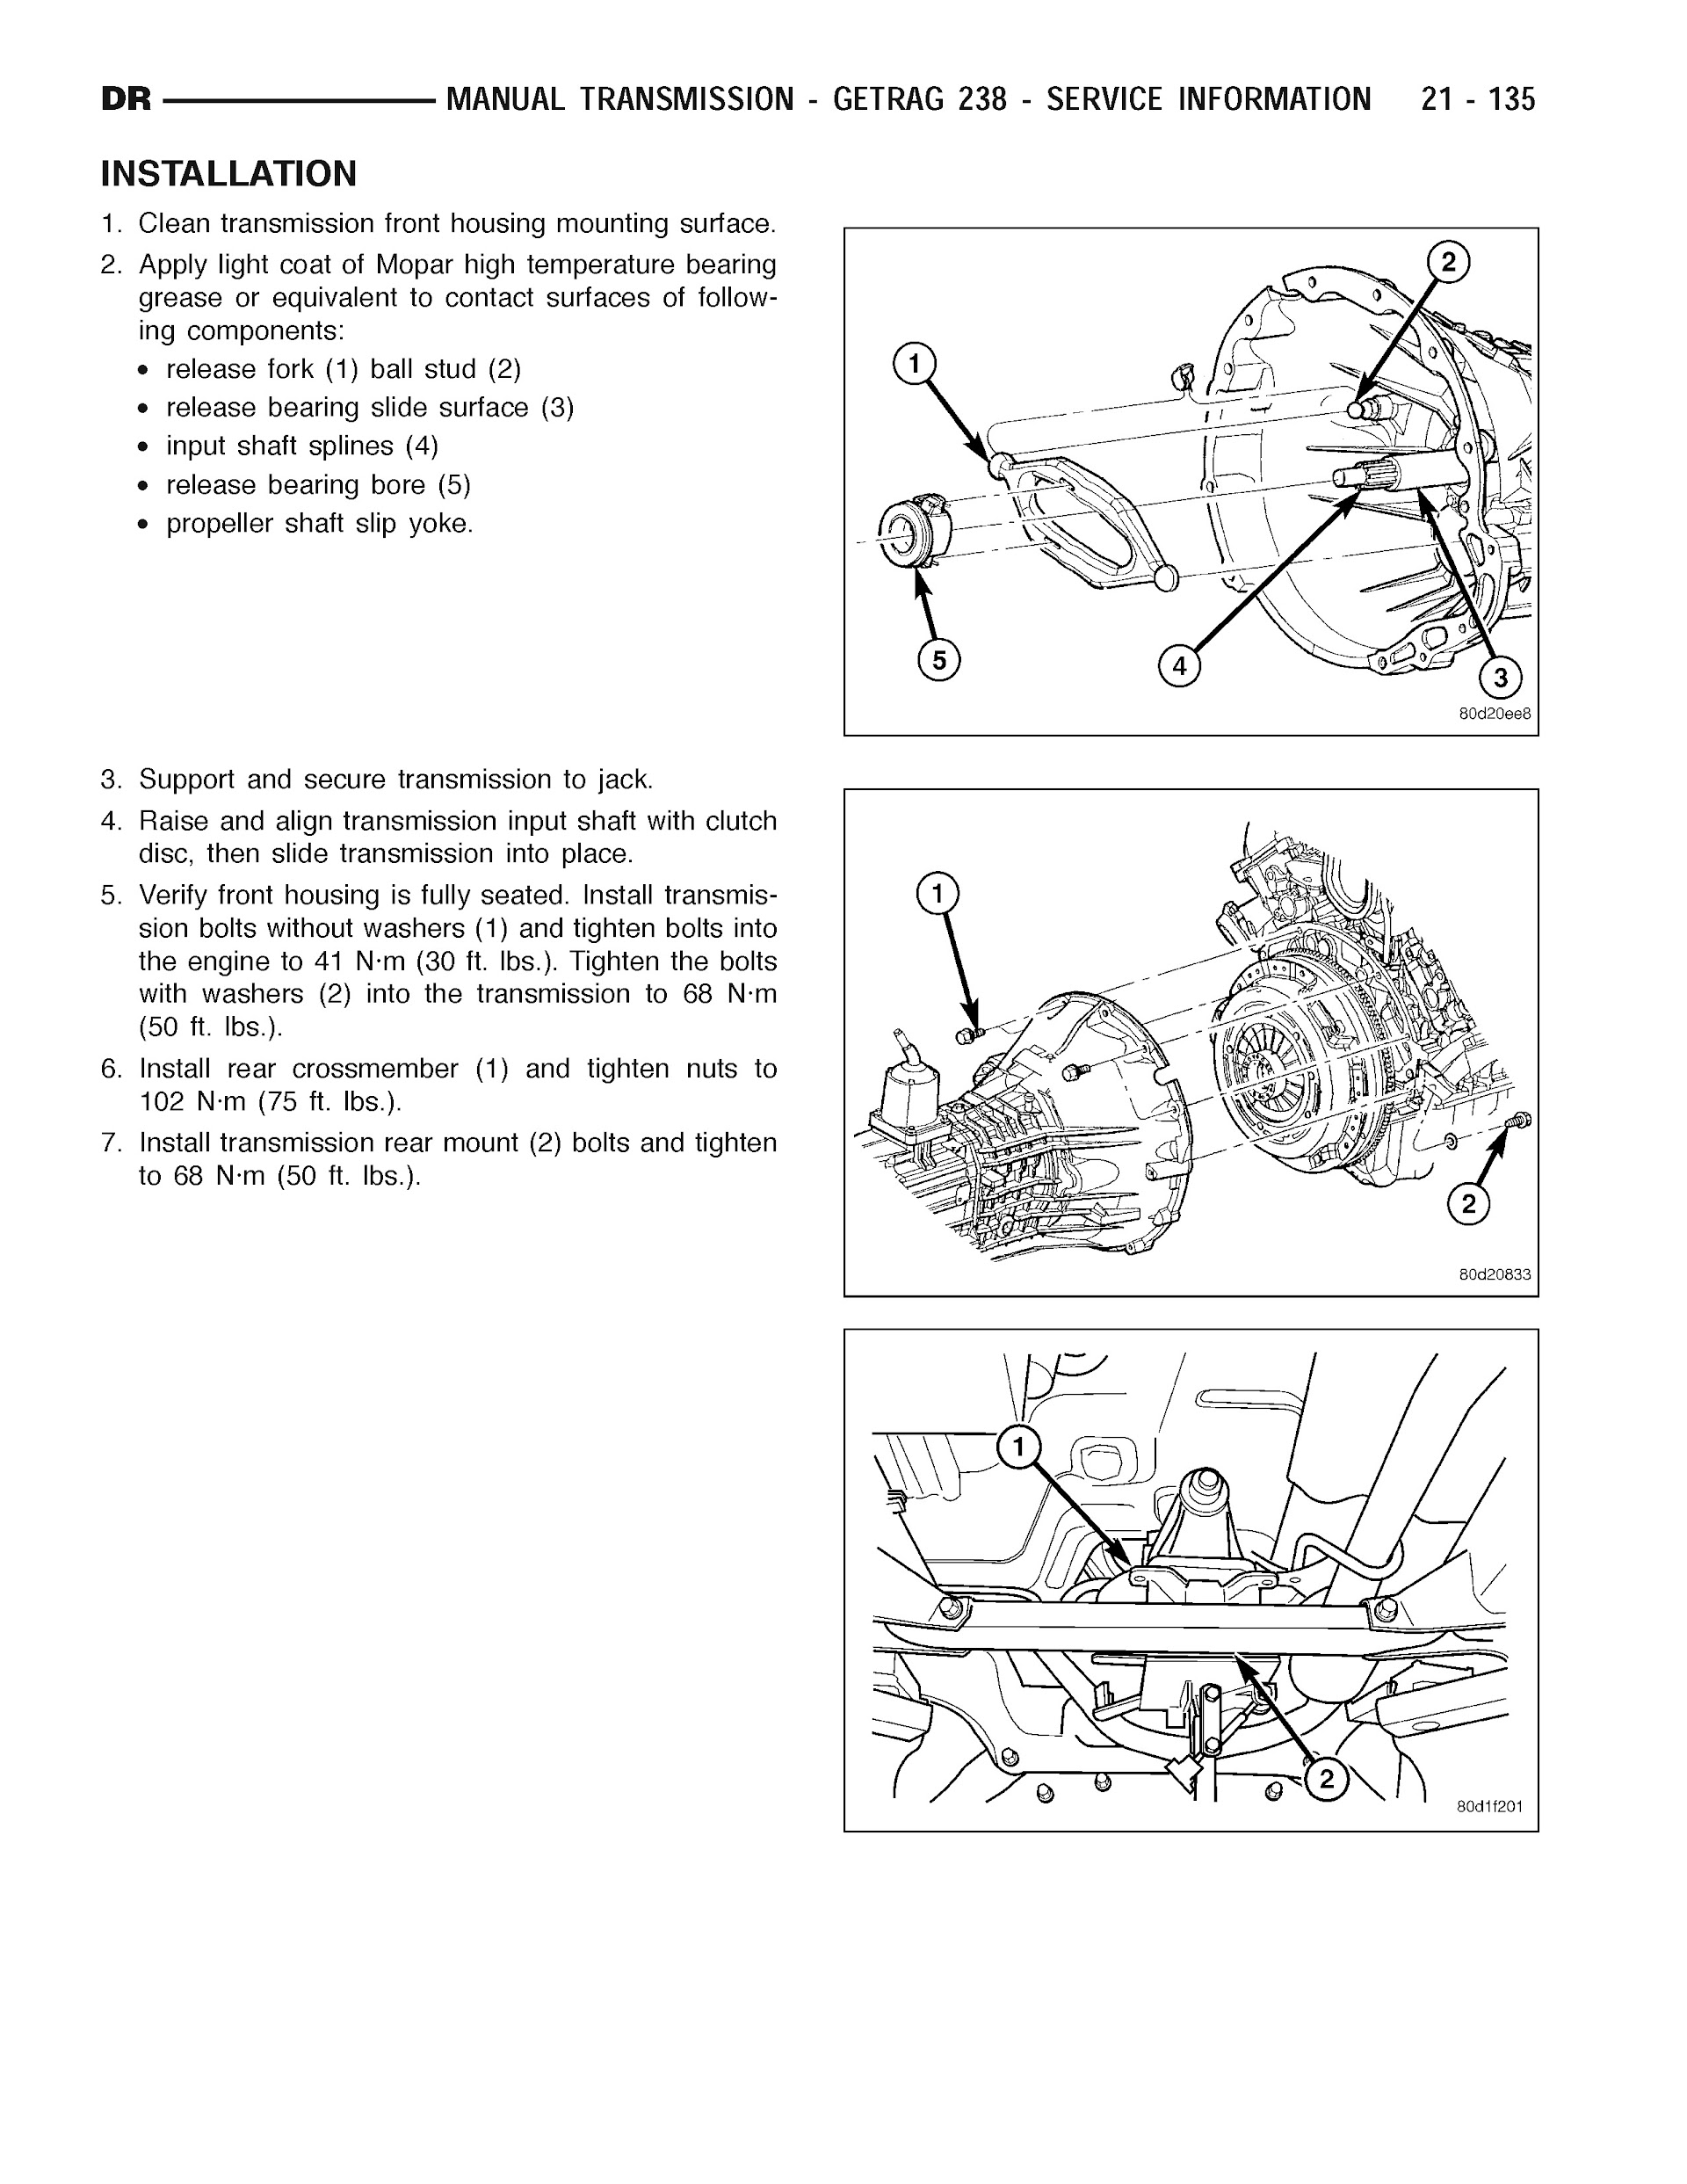 2007 Dodge RAM Repair Manual, Manual Transmission